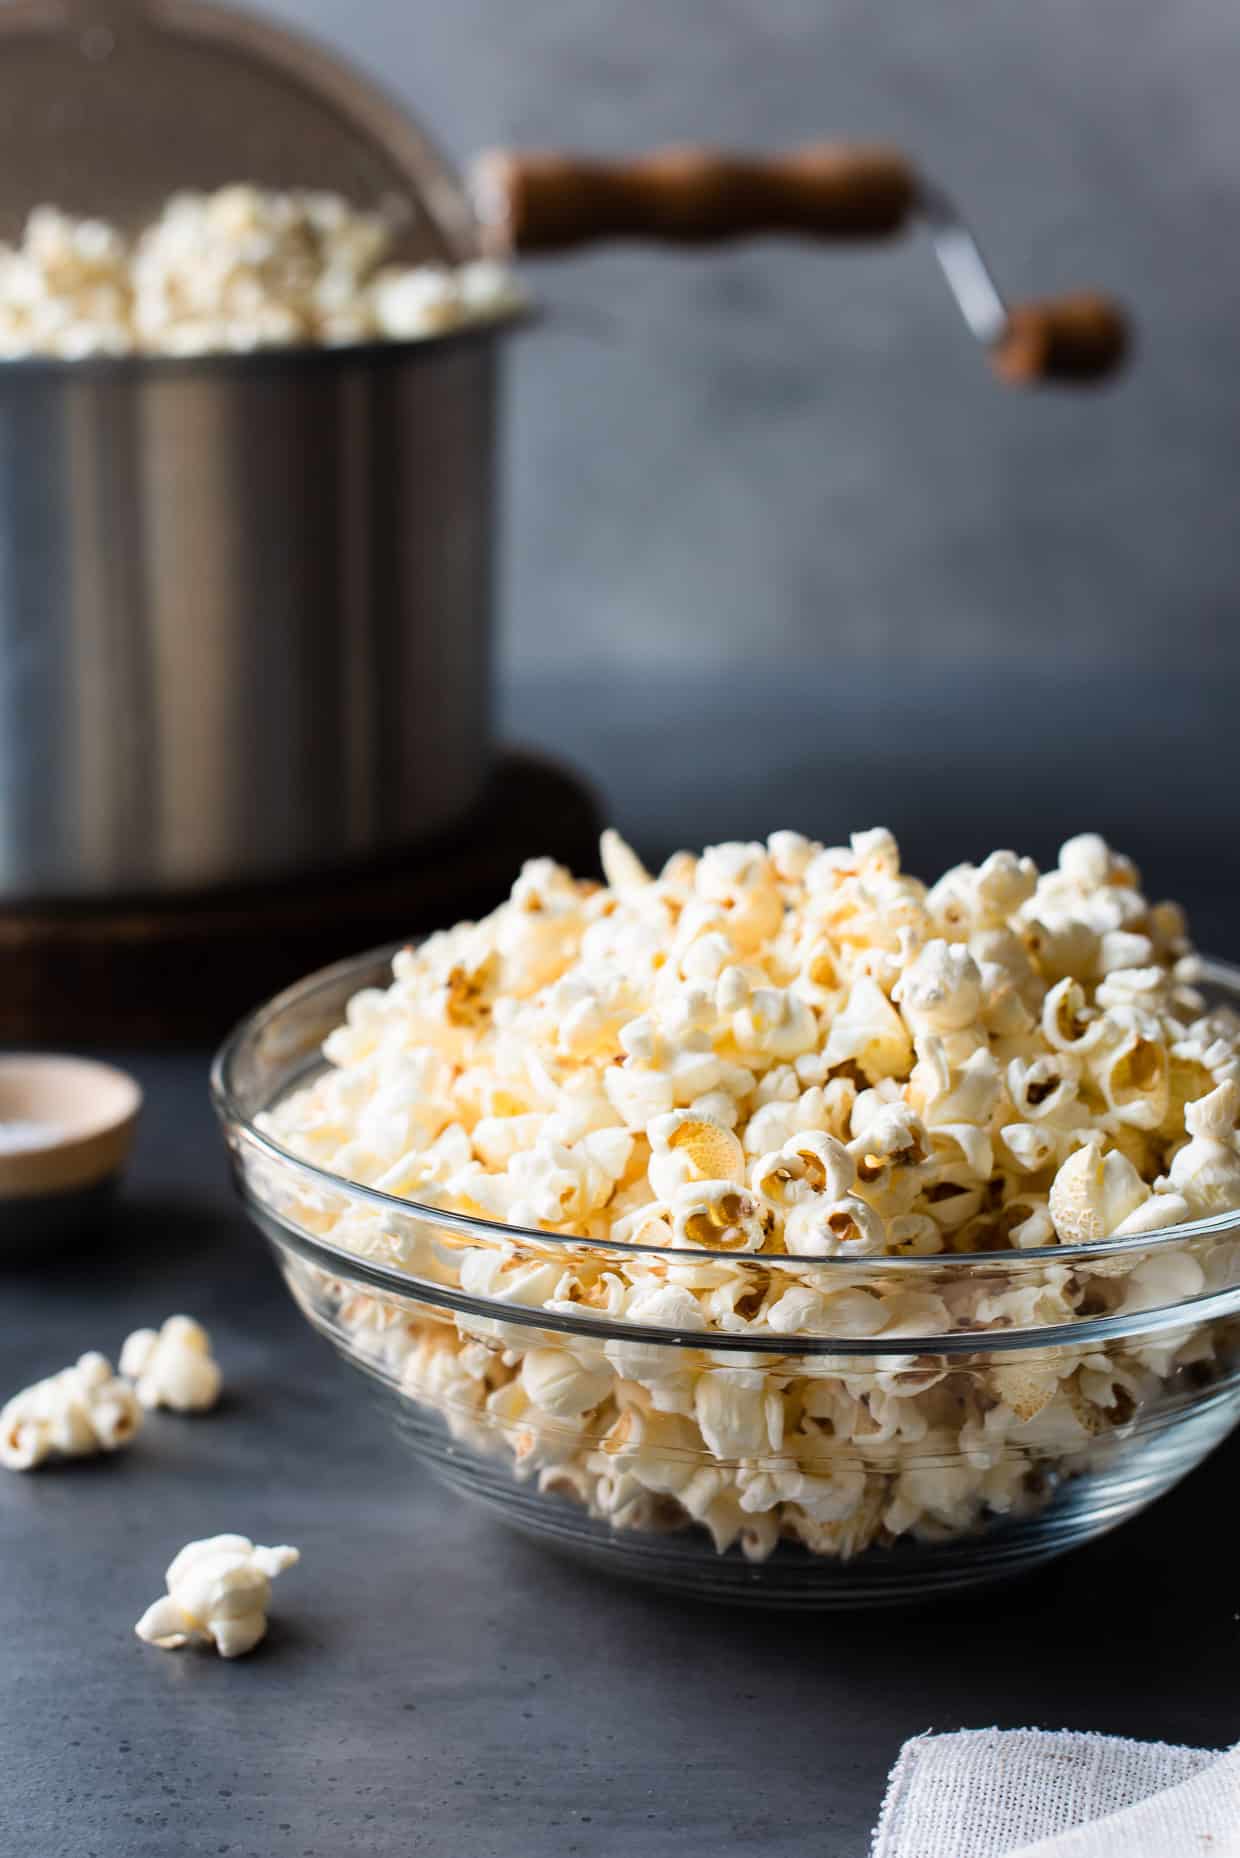 How To Make Stovetop Popcorn - Easy Popcorn Recipe